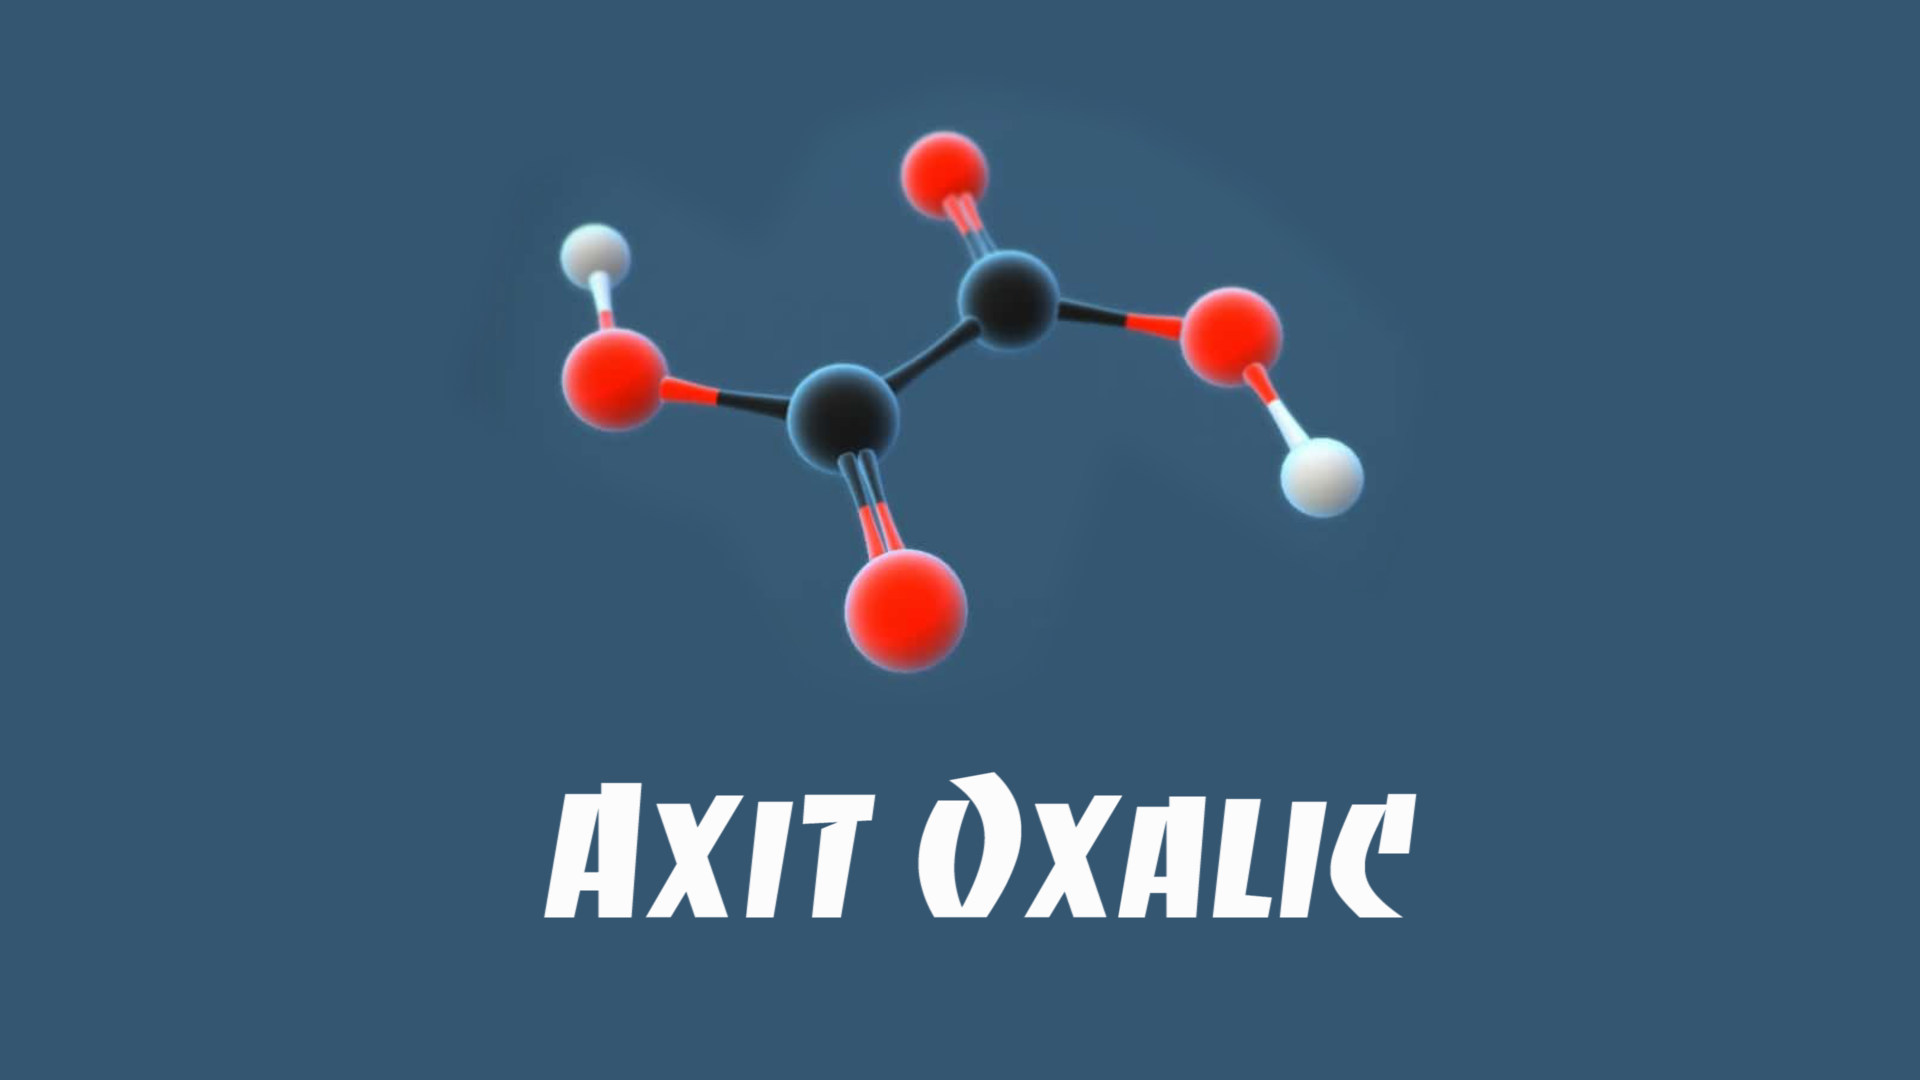 Axit oxalic là gì